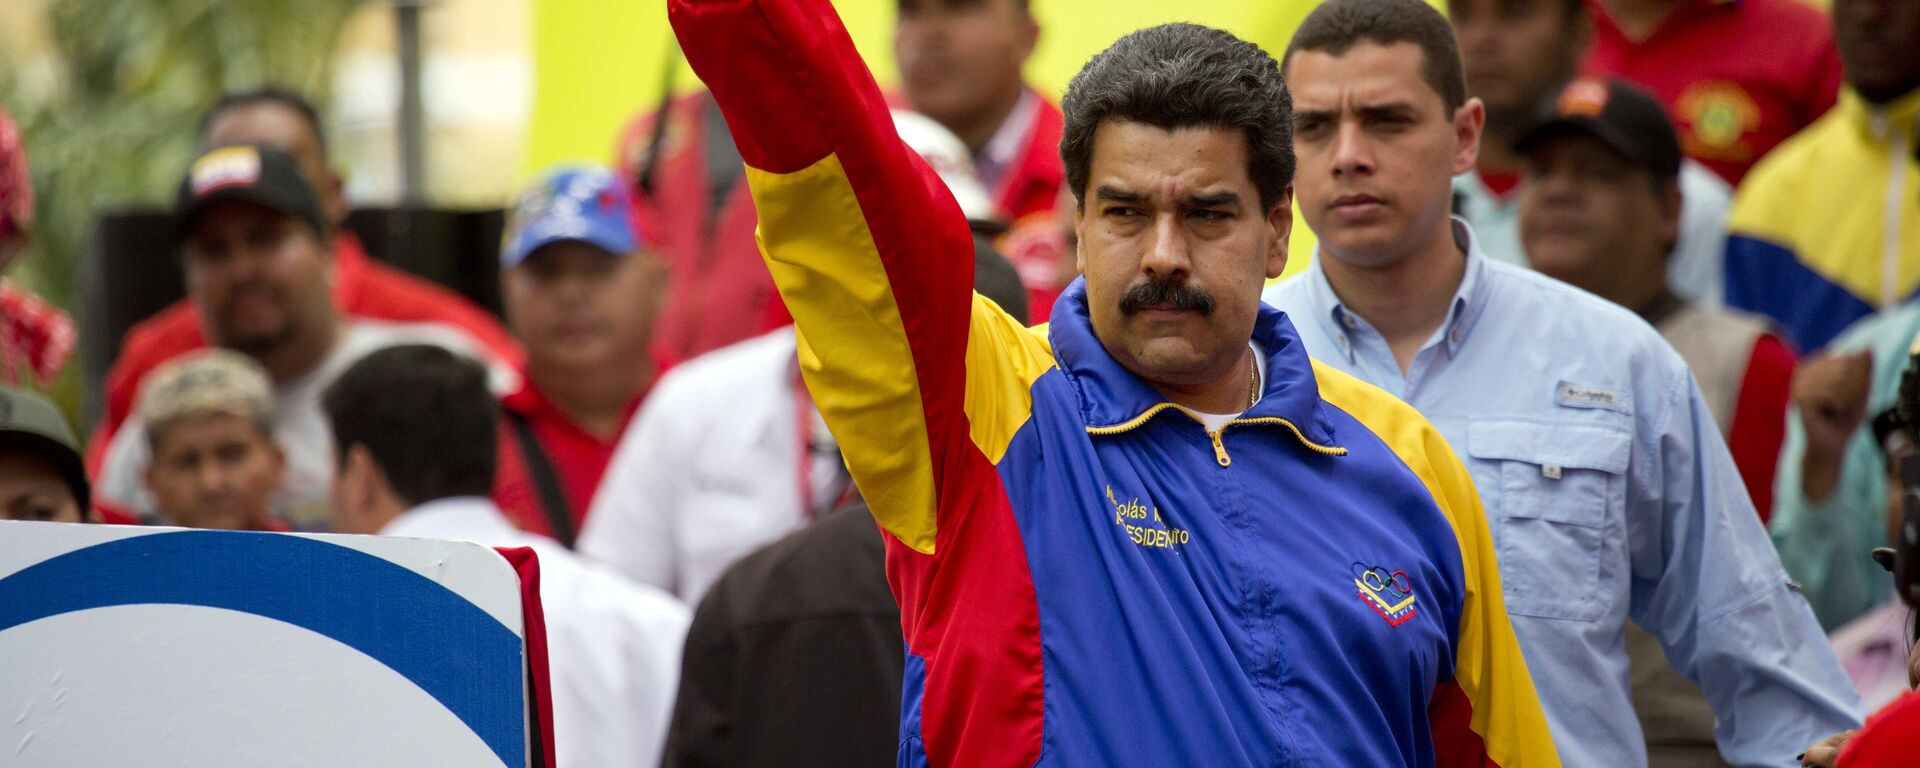 Nicolás Maduro, presidente de Venezuela - Sputnik Mundo, 1920, 29.12.2021